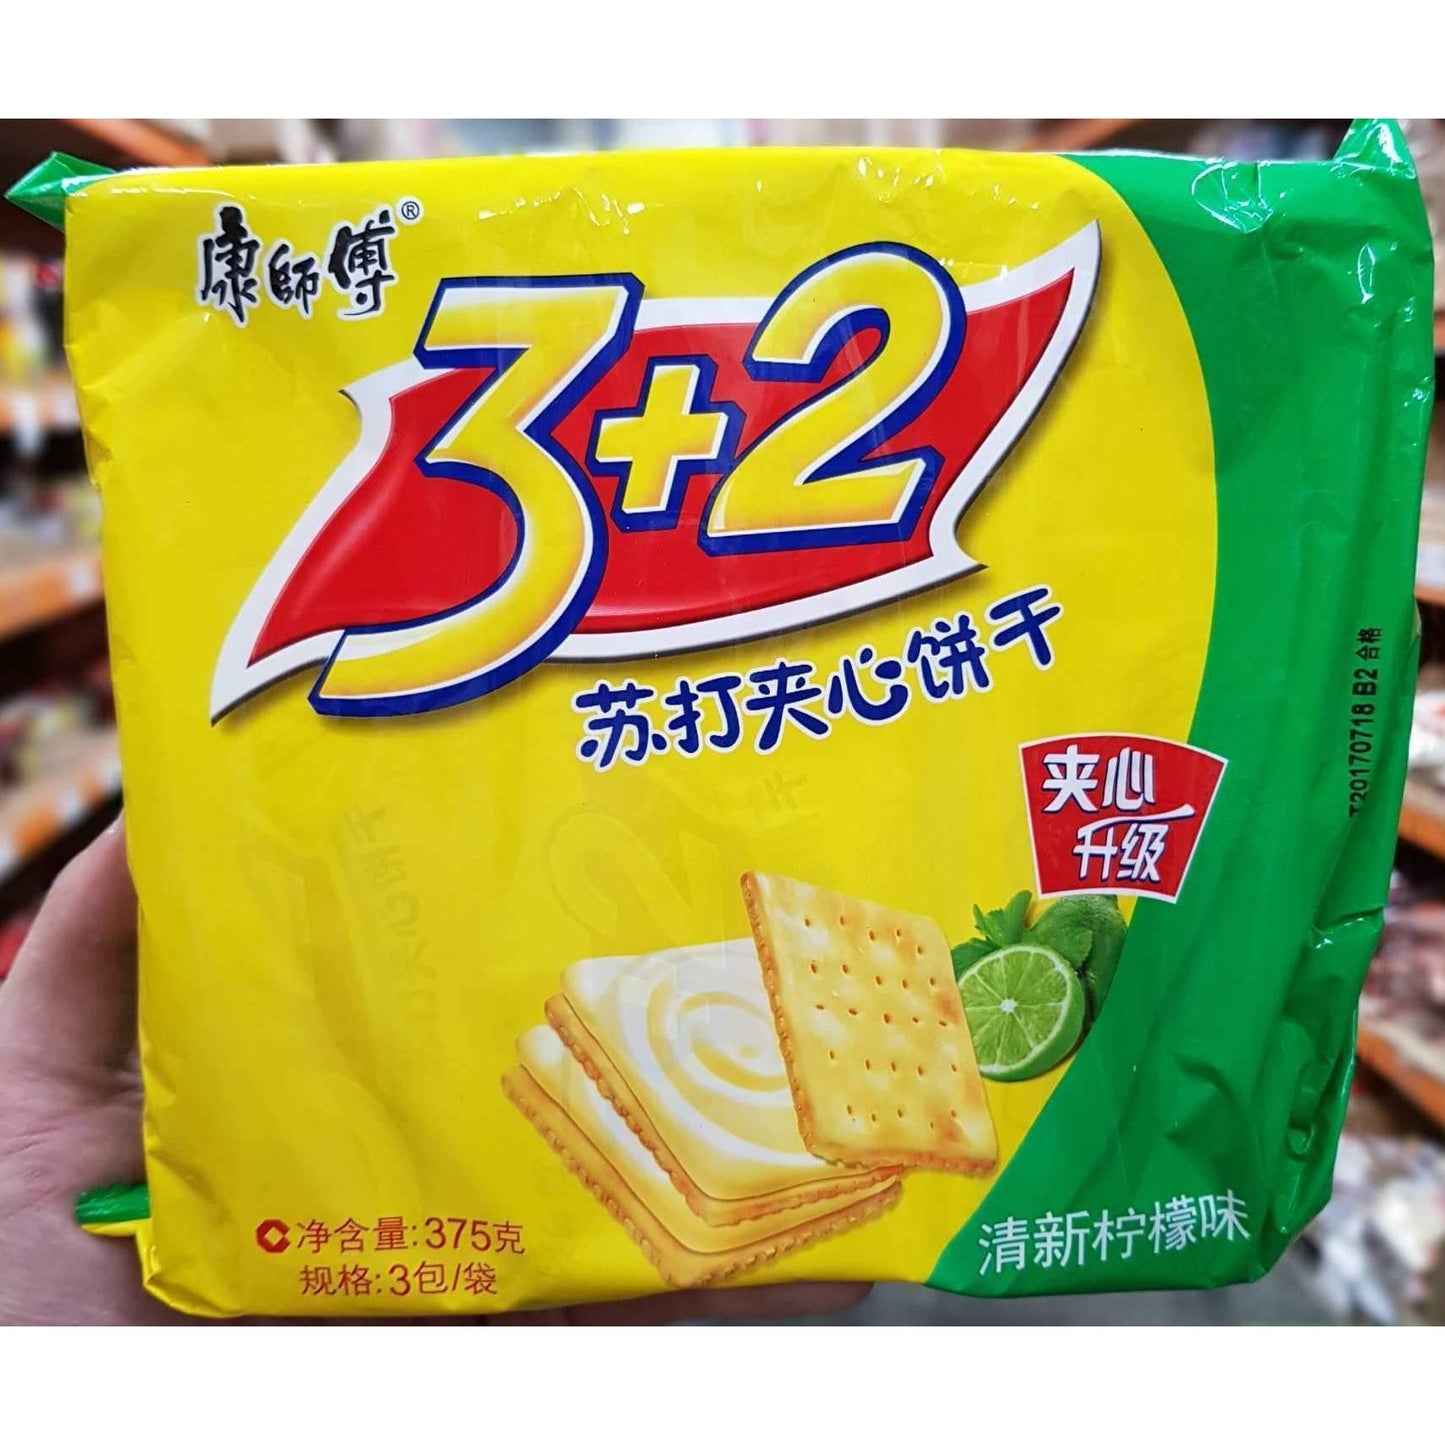 C036L- Kon Lemon Flavour Cracker 375g 16PKT/ 1 CTN - New Eastland Pty Ltd - Asian food wholesalers